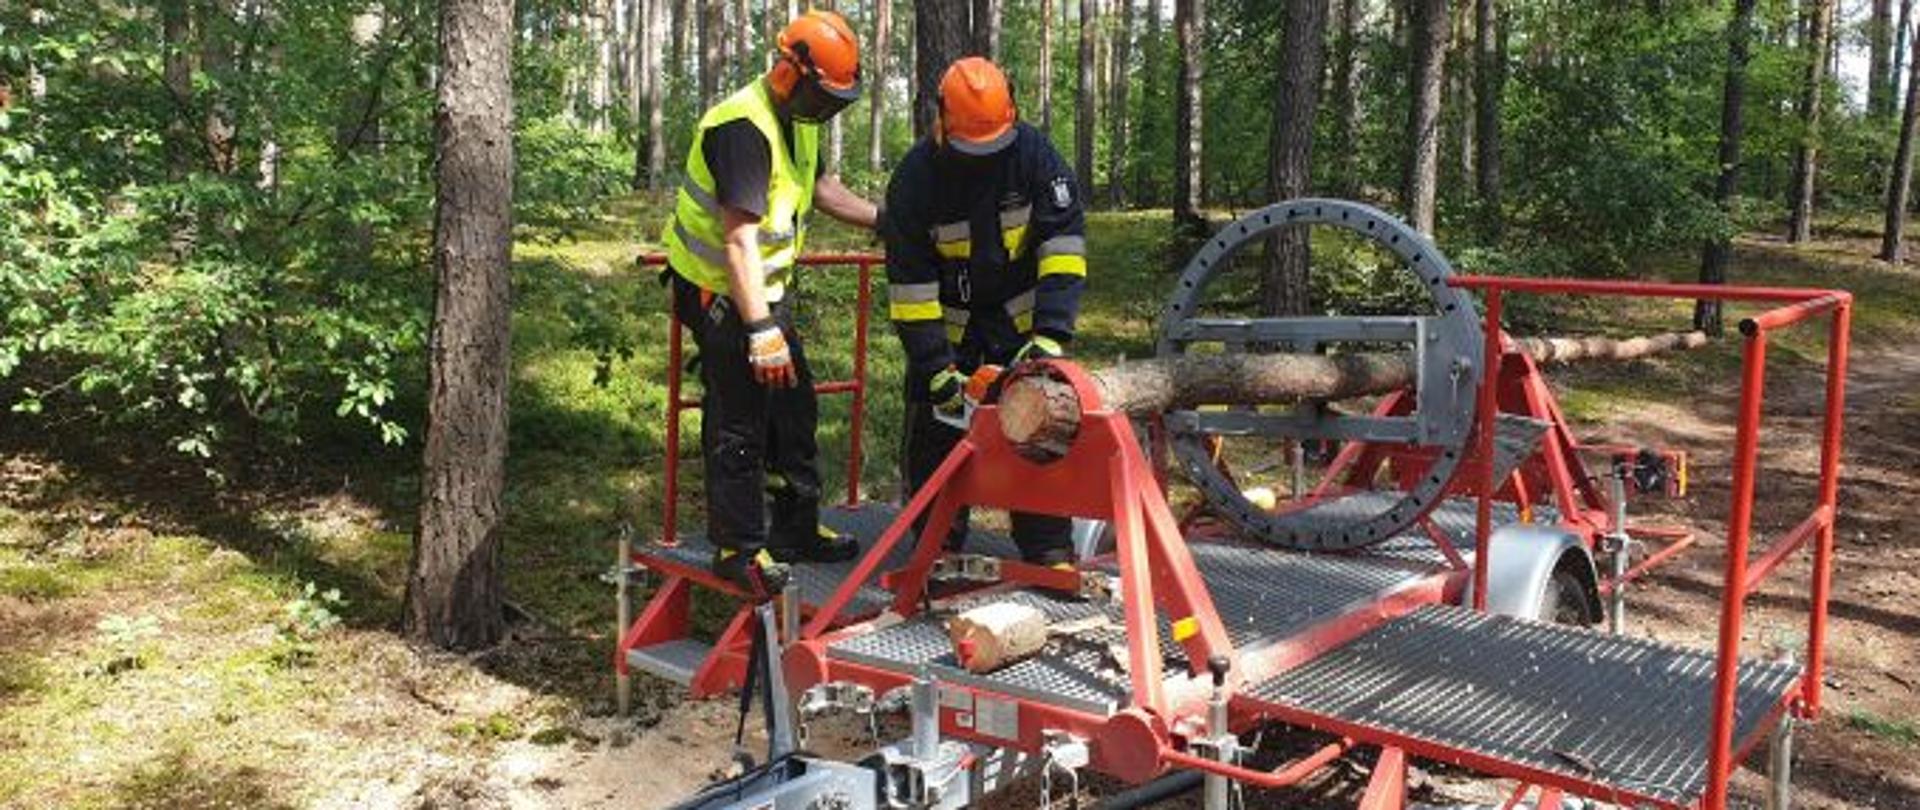 Dwóch strażaków przecina pień drzewa w symulatorze naprężeń